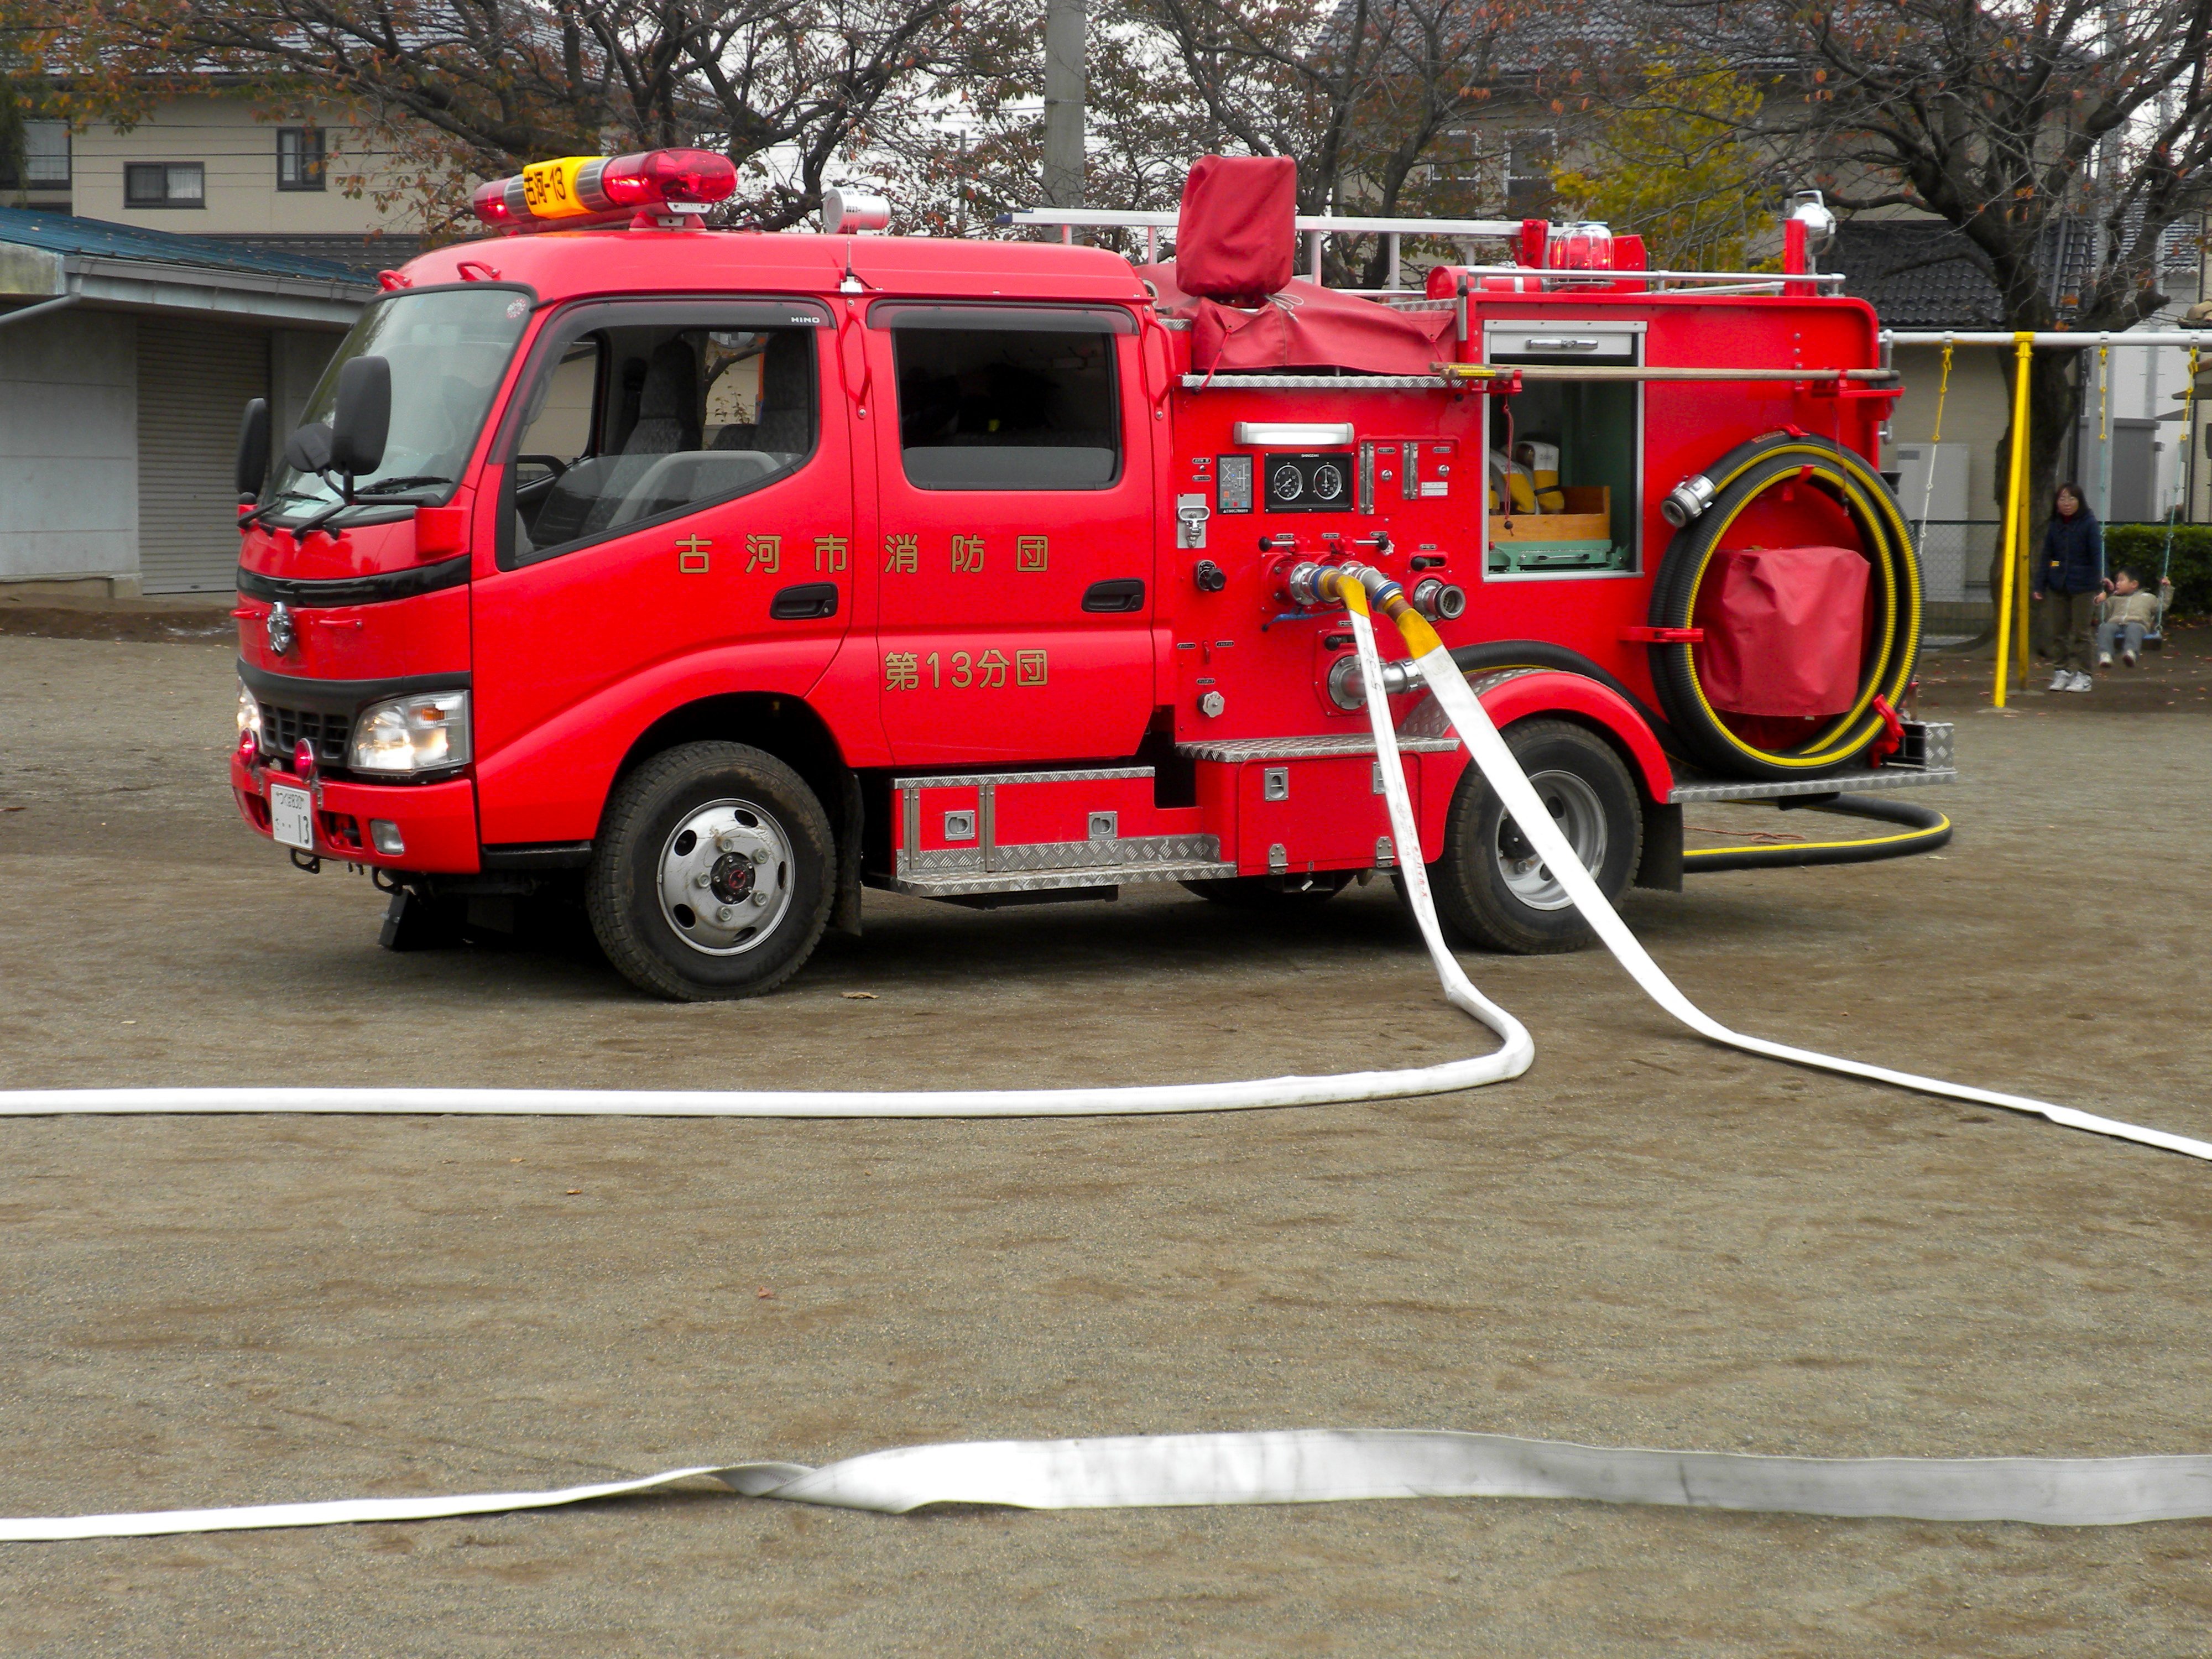 Управление пожарными автомобилями. Машина "Fire Truck" пожарная, 49450. Пожарная машинка (20 см) Fire-Fighting vehicle bp738. Пожарная машина FAW 12. FMC пожарная машина.